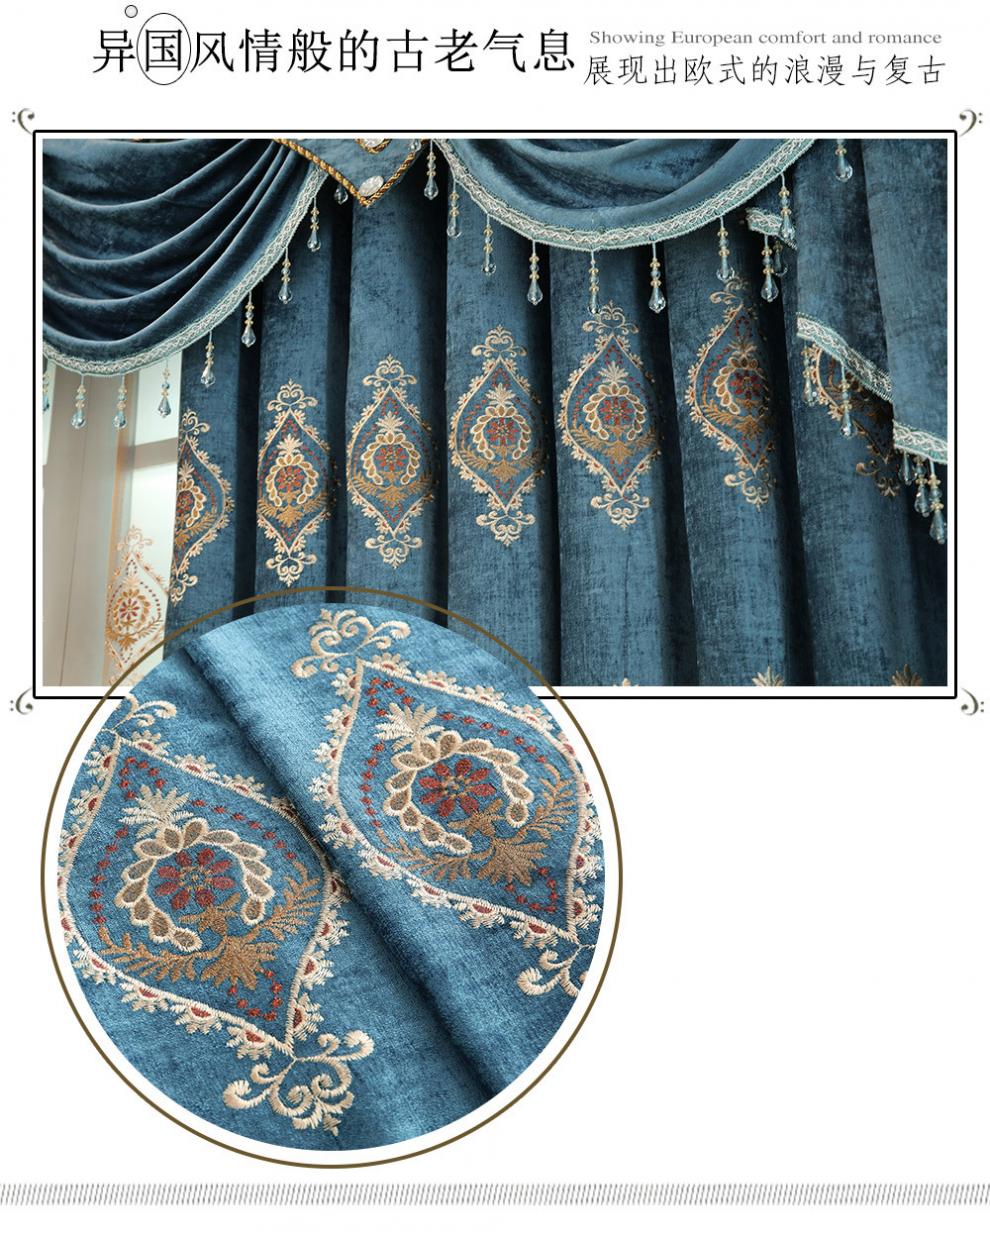 レース カーテン 花 柄 刺繍,花 柄 の カーテン,カントリー 風 カーテン 席韻の家紡のカーテン欧式の客間の寝室の別荘のシニールの刺繍の